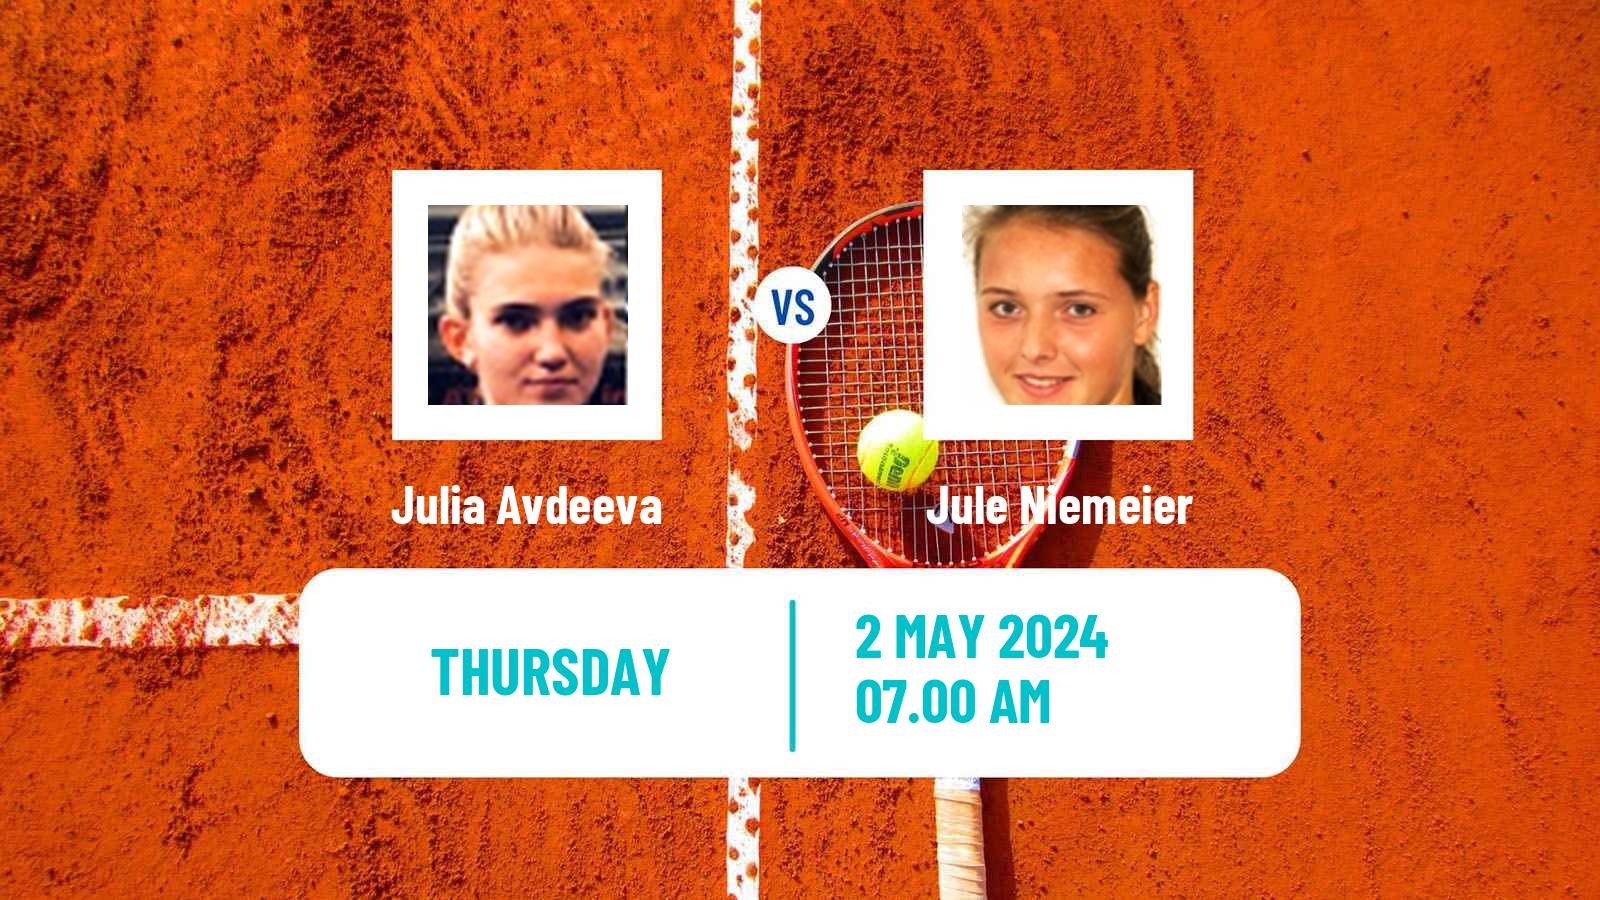 Tennis ITF W100 Wiesbaden Women Julia Avdeeva - Jule Niemeier